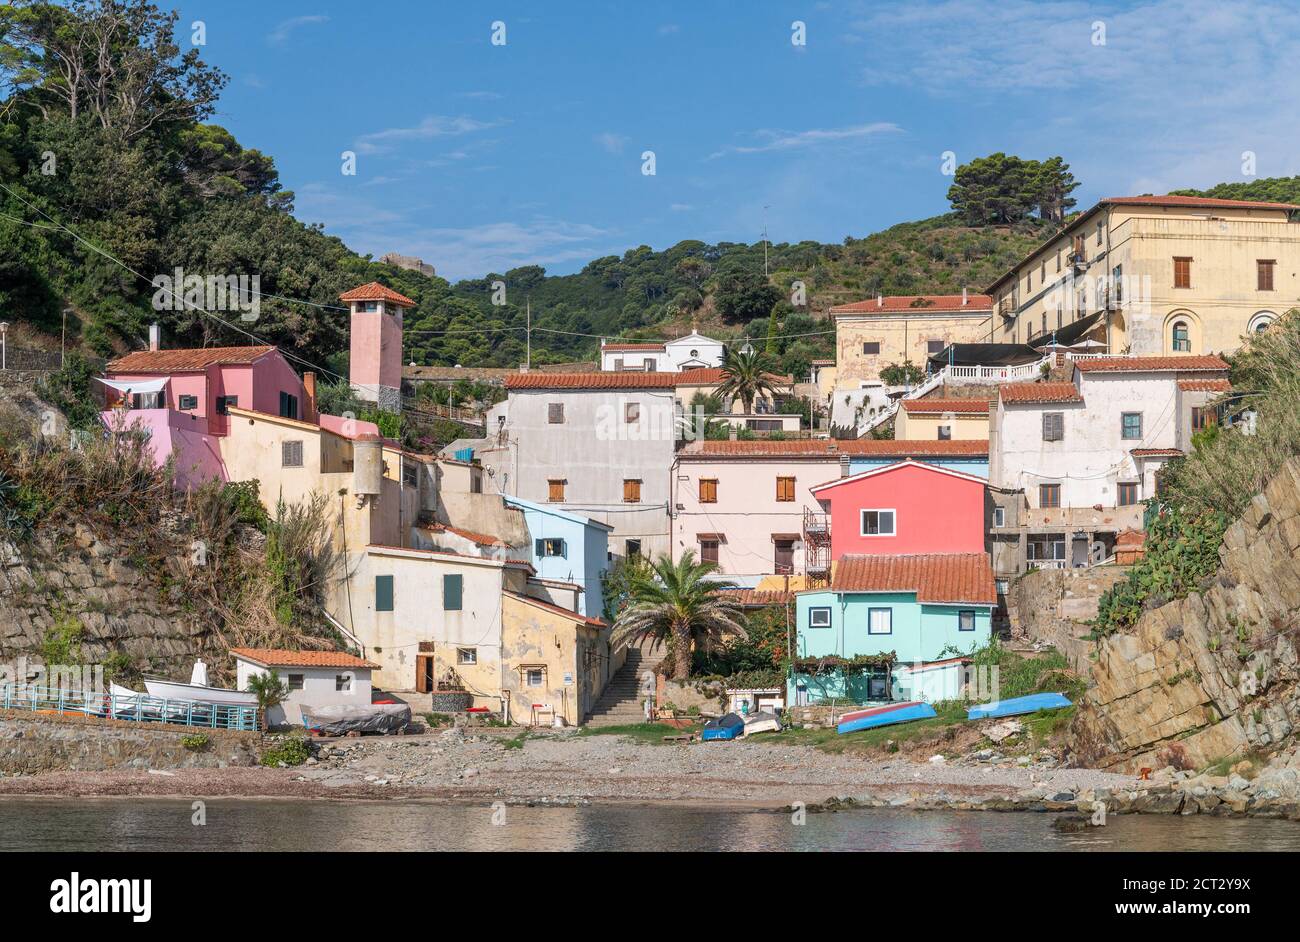 Village sur l'île de la prison de Gorgona, Toscane, Italie Banque D'Images